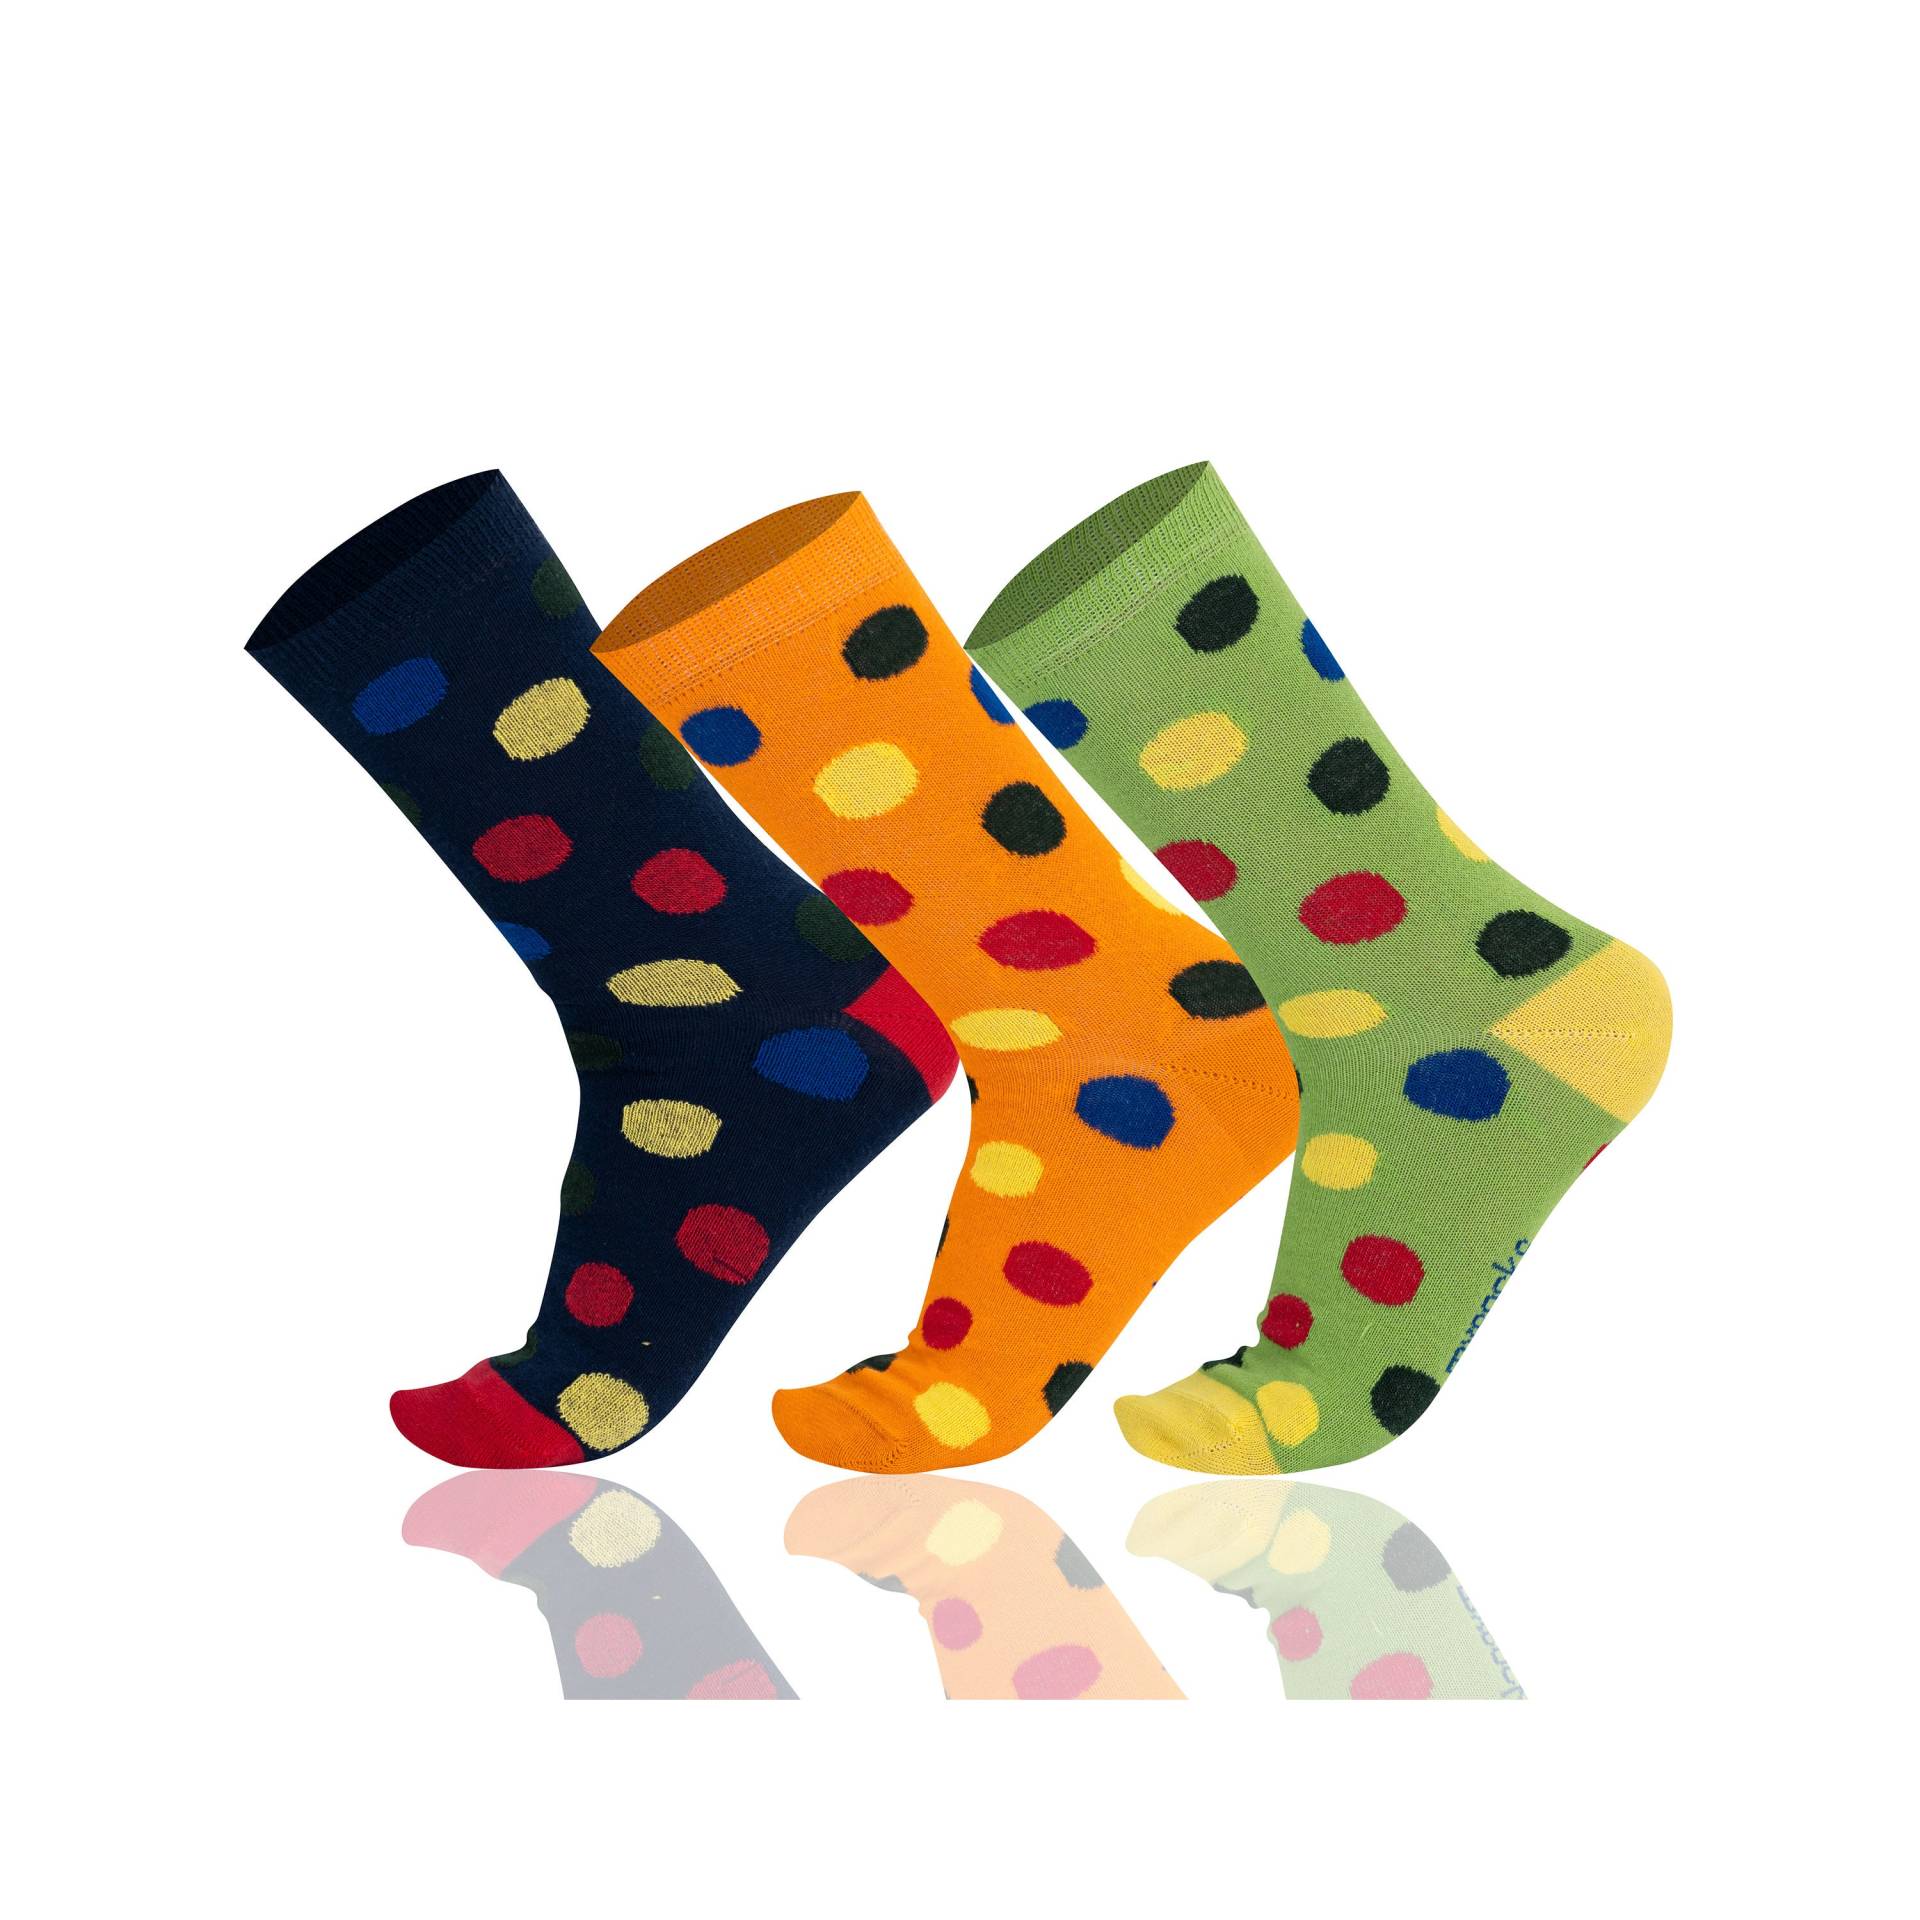 Mysocks Kinder 3 Paar Multi Color Polka Dot Muster Socken von MysocksUK